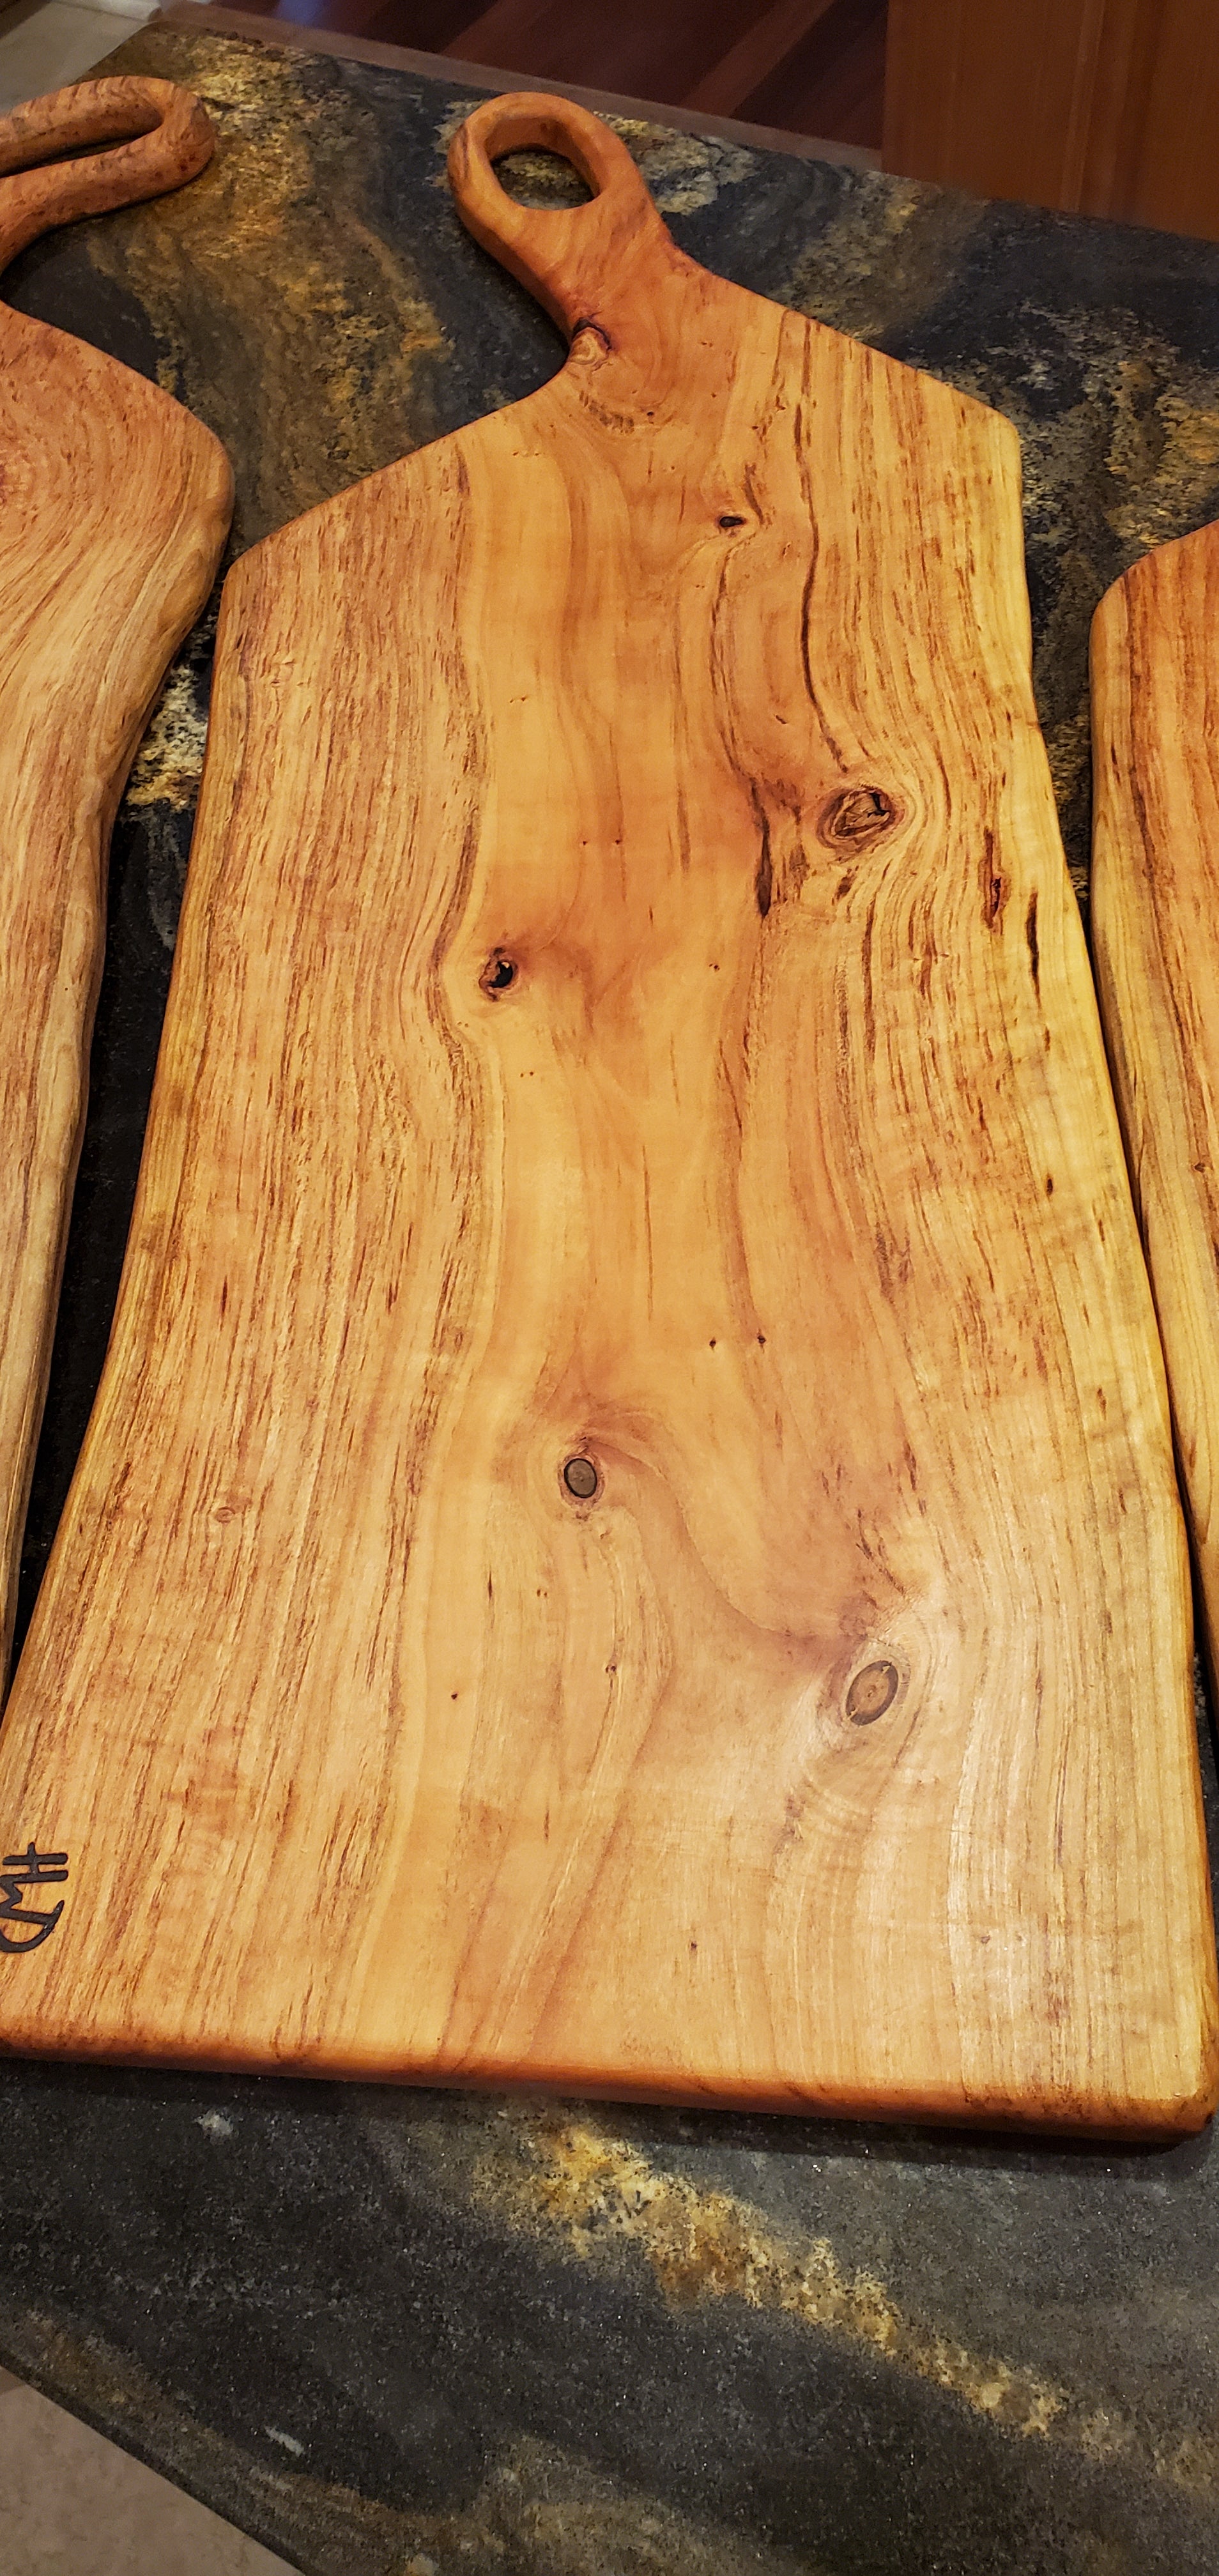 Jarhead Wood Wax - Cutting Board Finishing Wax